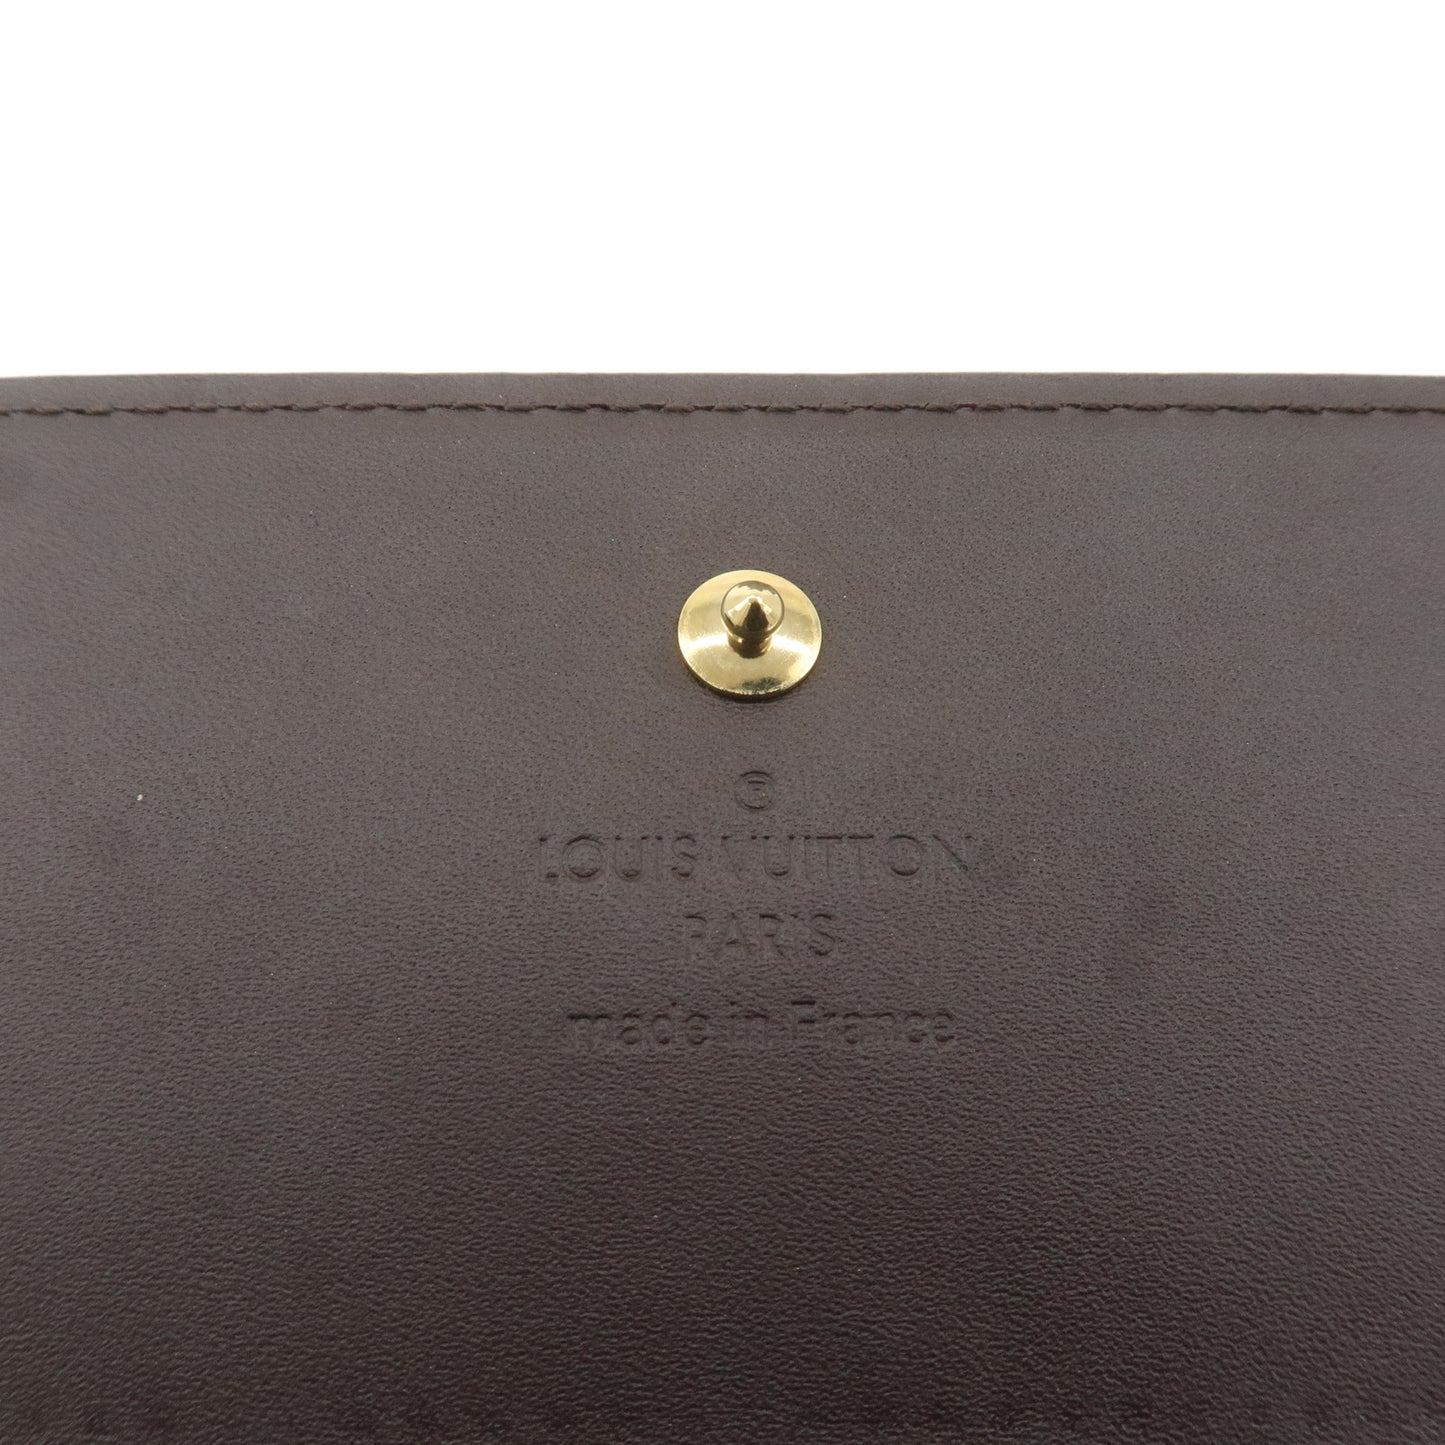 Louis Vuitton Monogram Vernis Portefeuille Wallet Amarante M90088